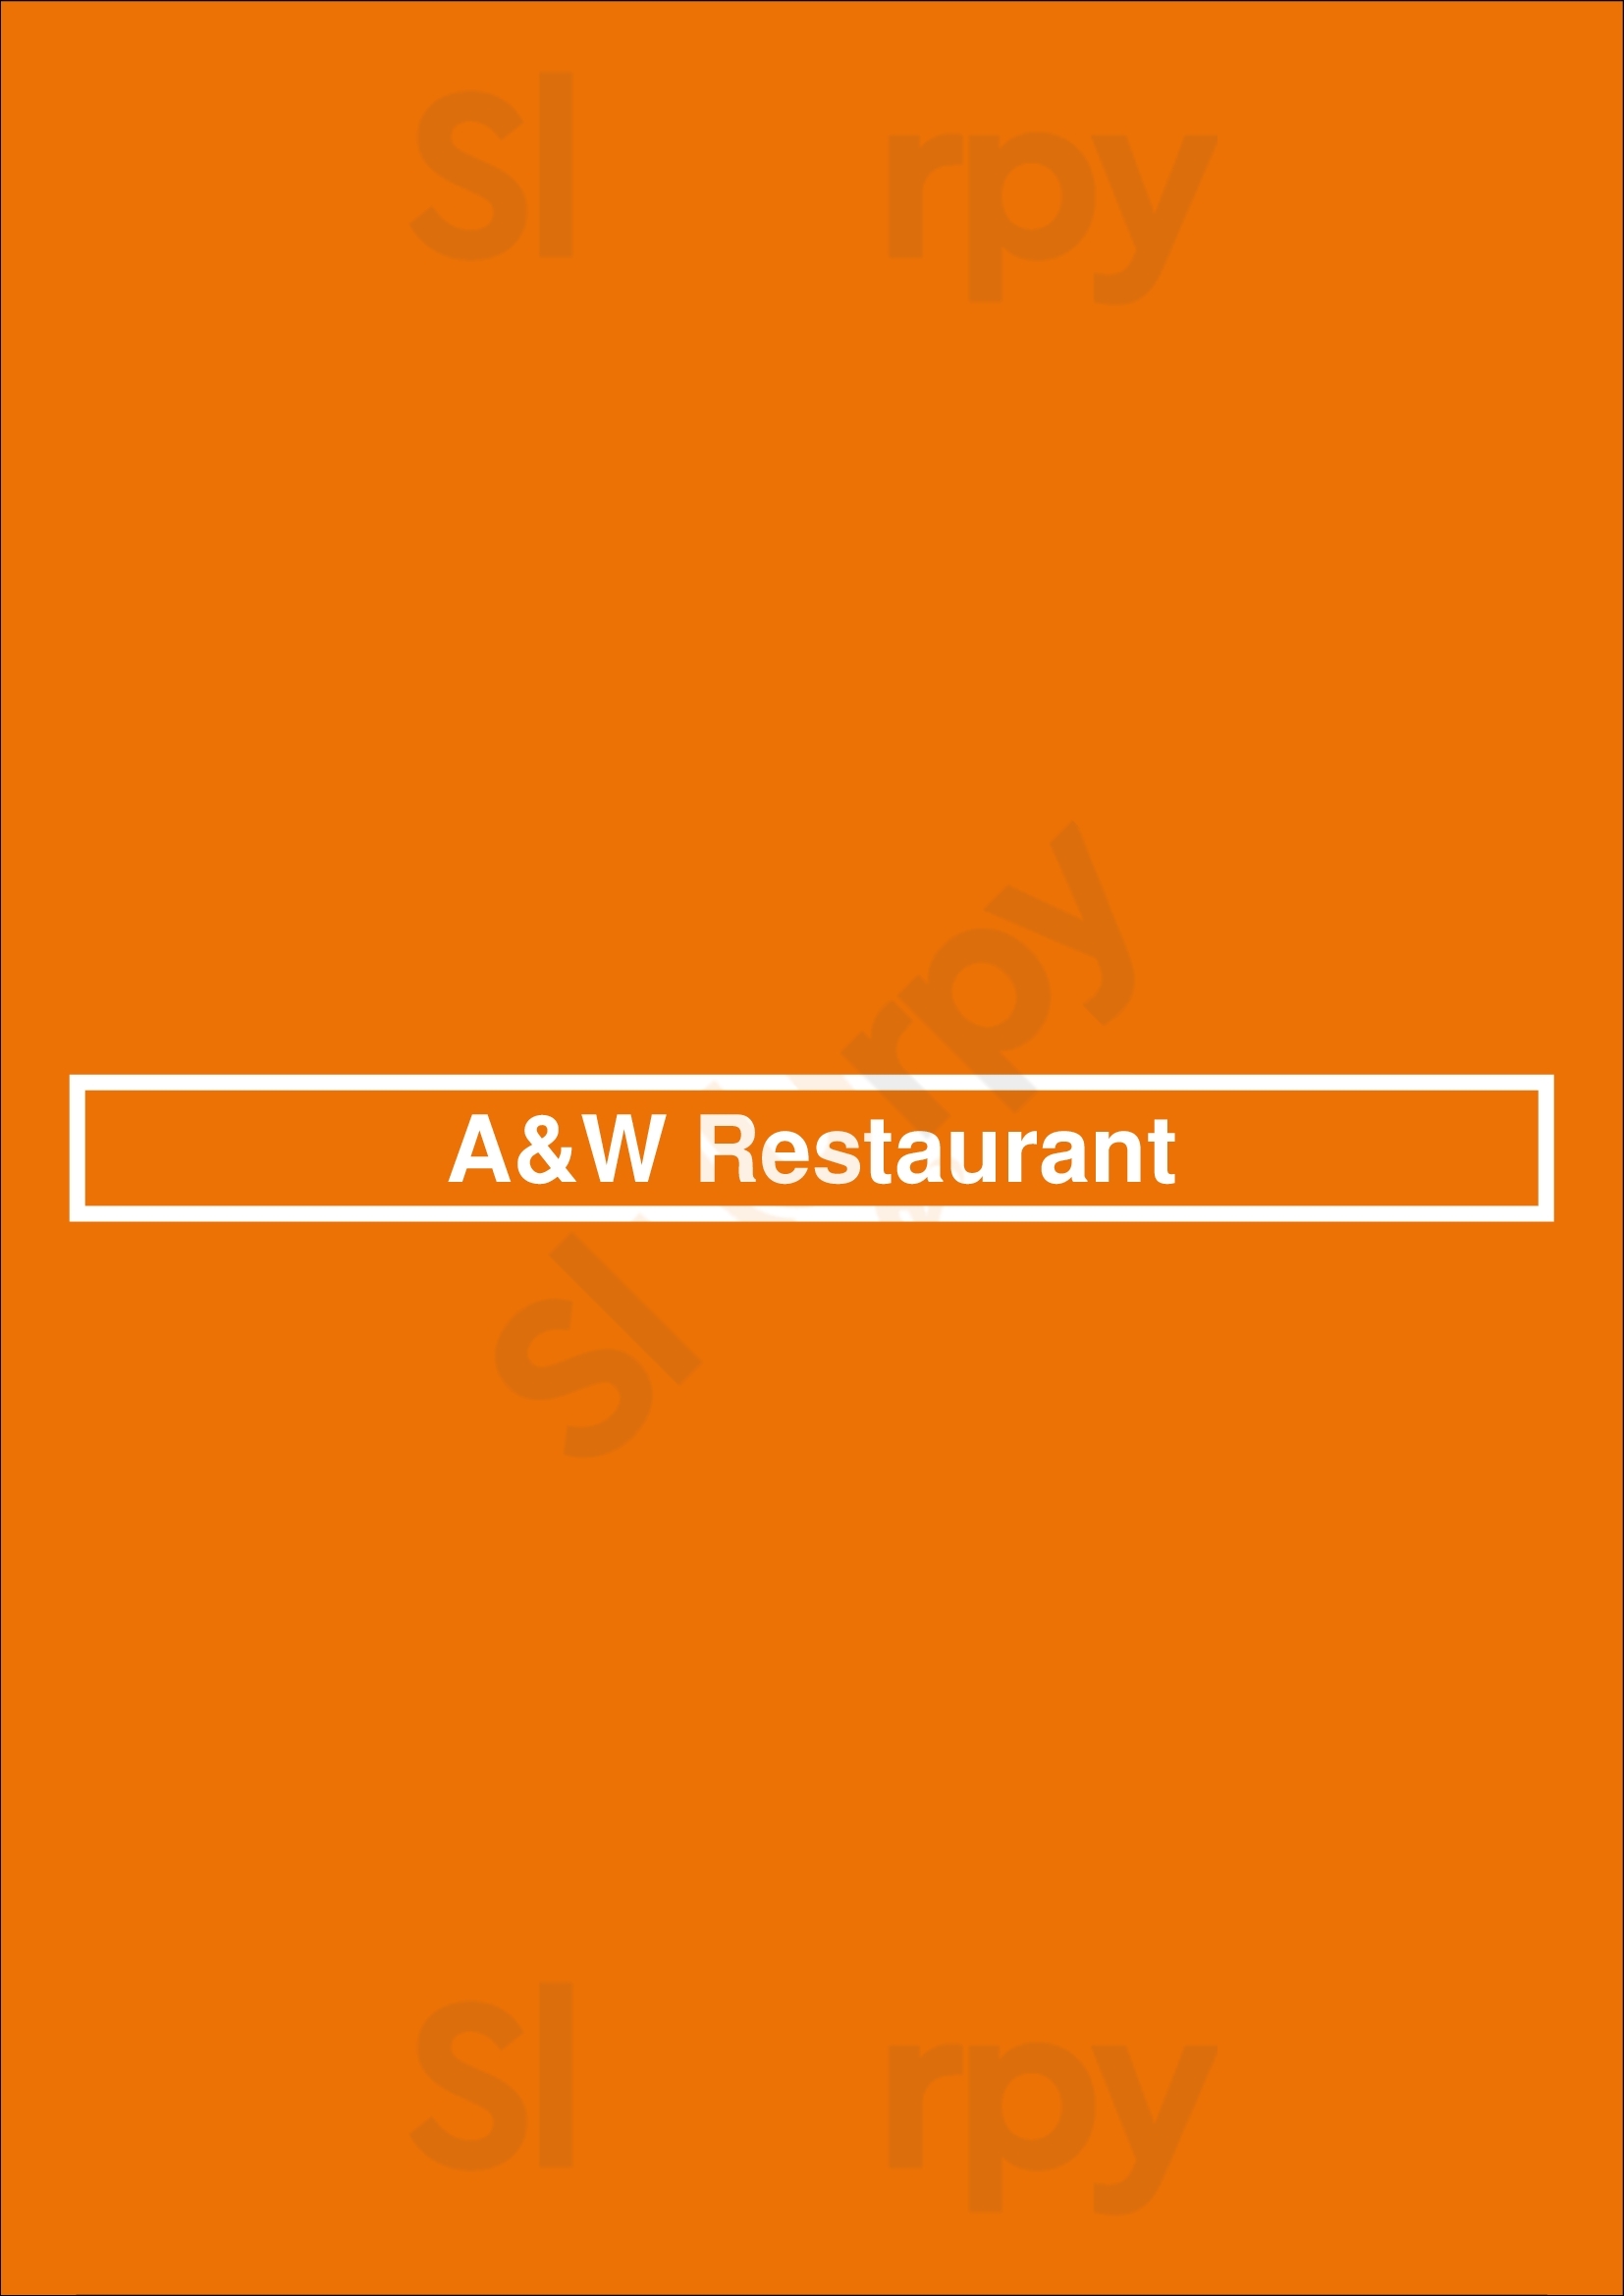 A&w Restaurant St. Albert Menu - 1